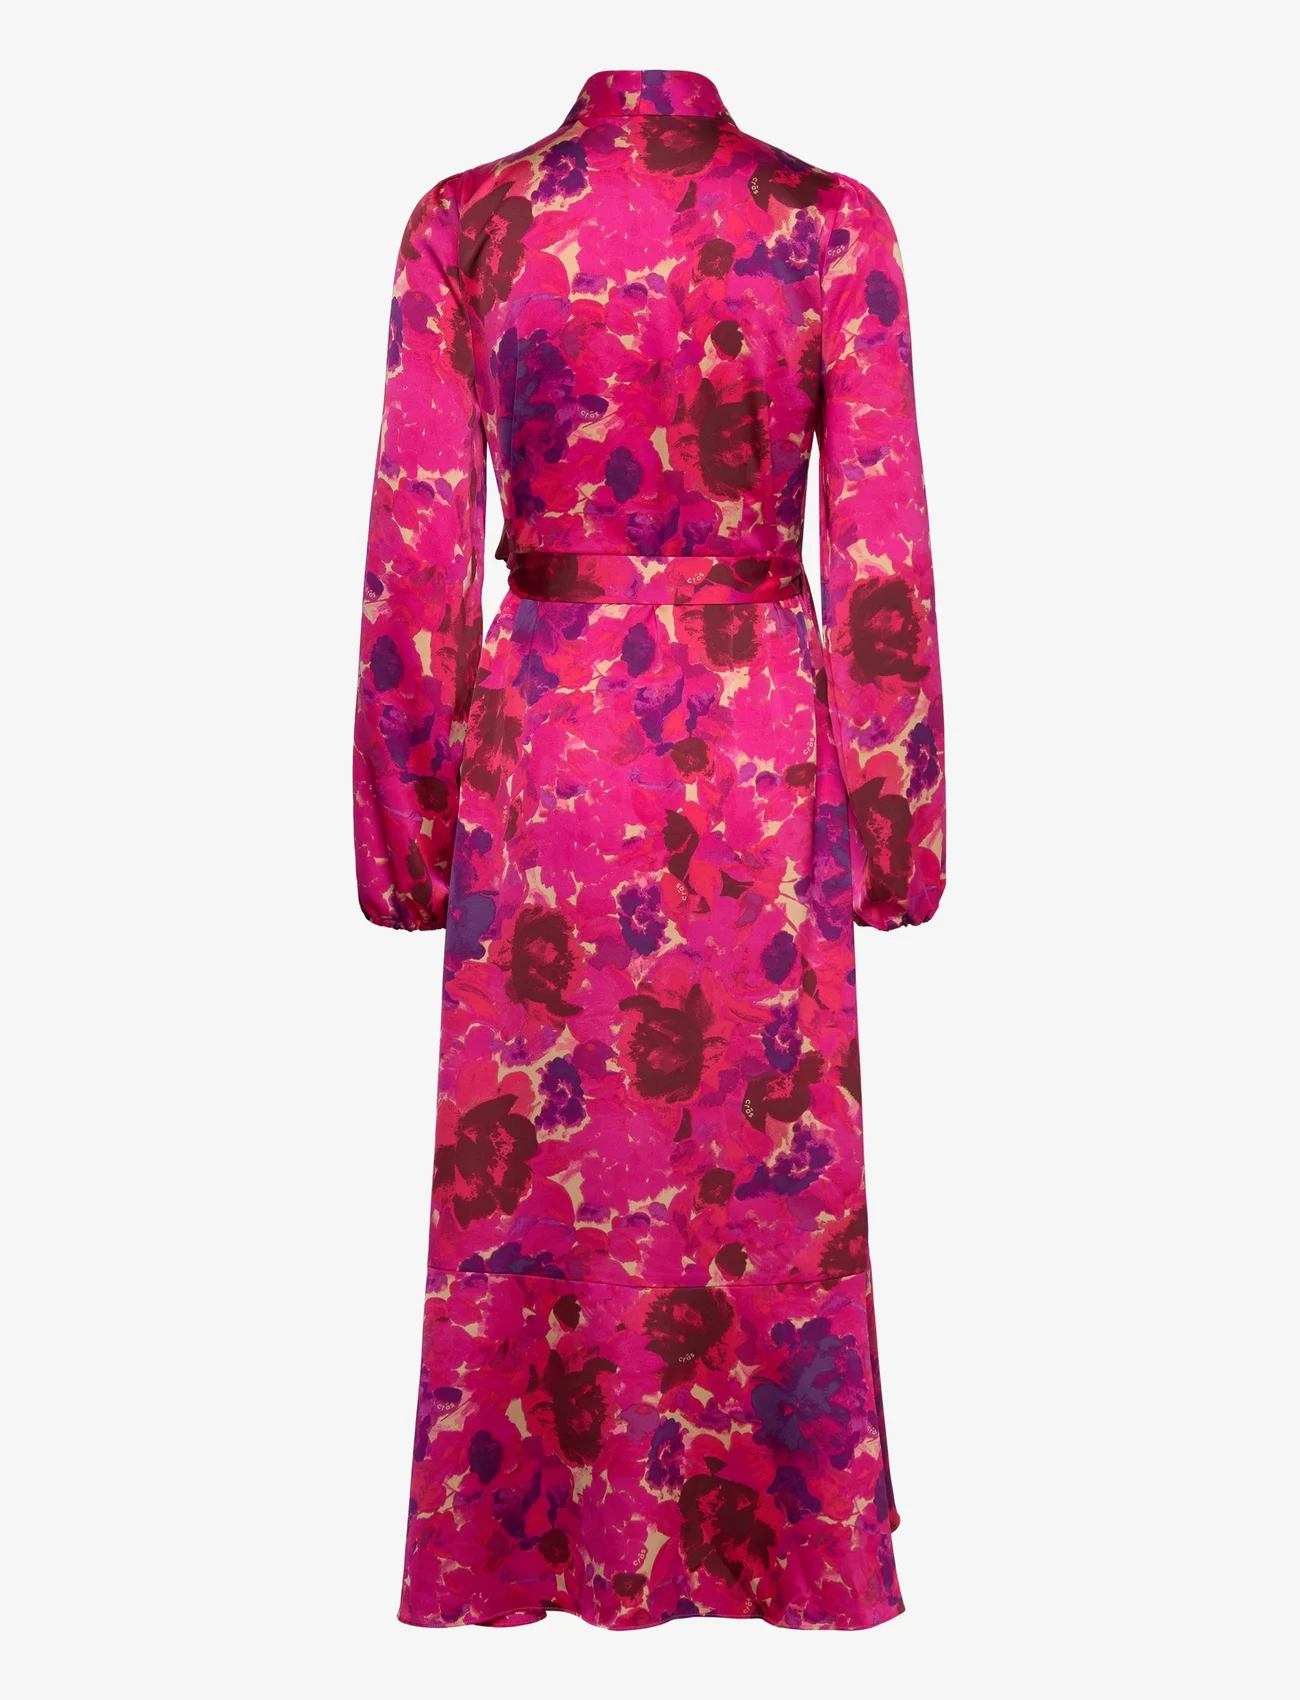 Cras - Laracras Dress - omslagskjoler - pink garden - 1